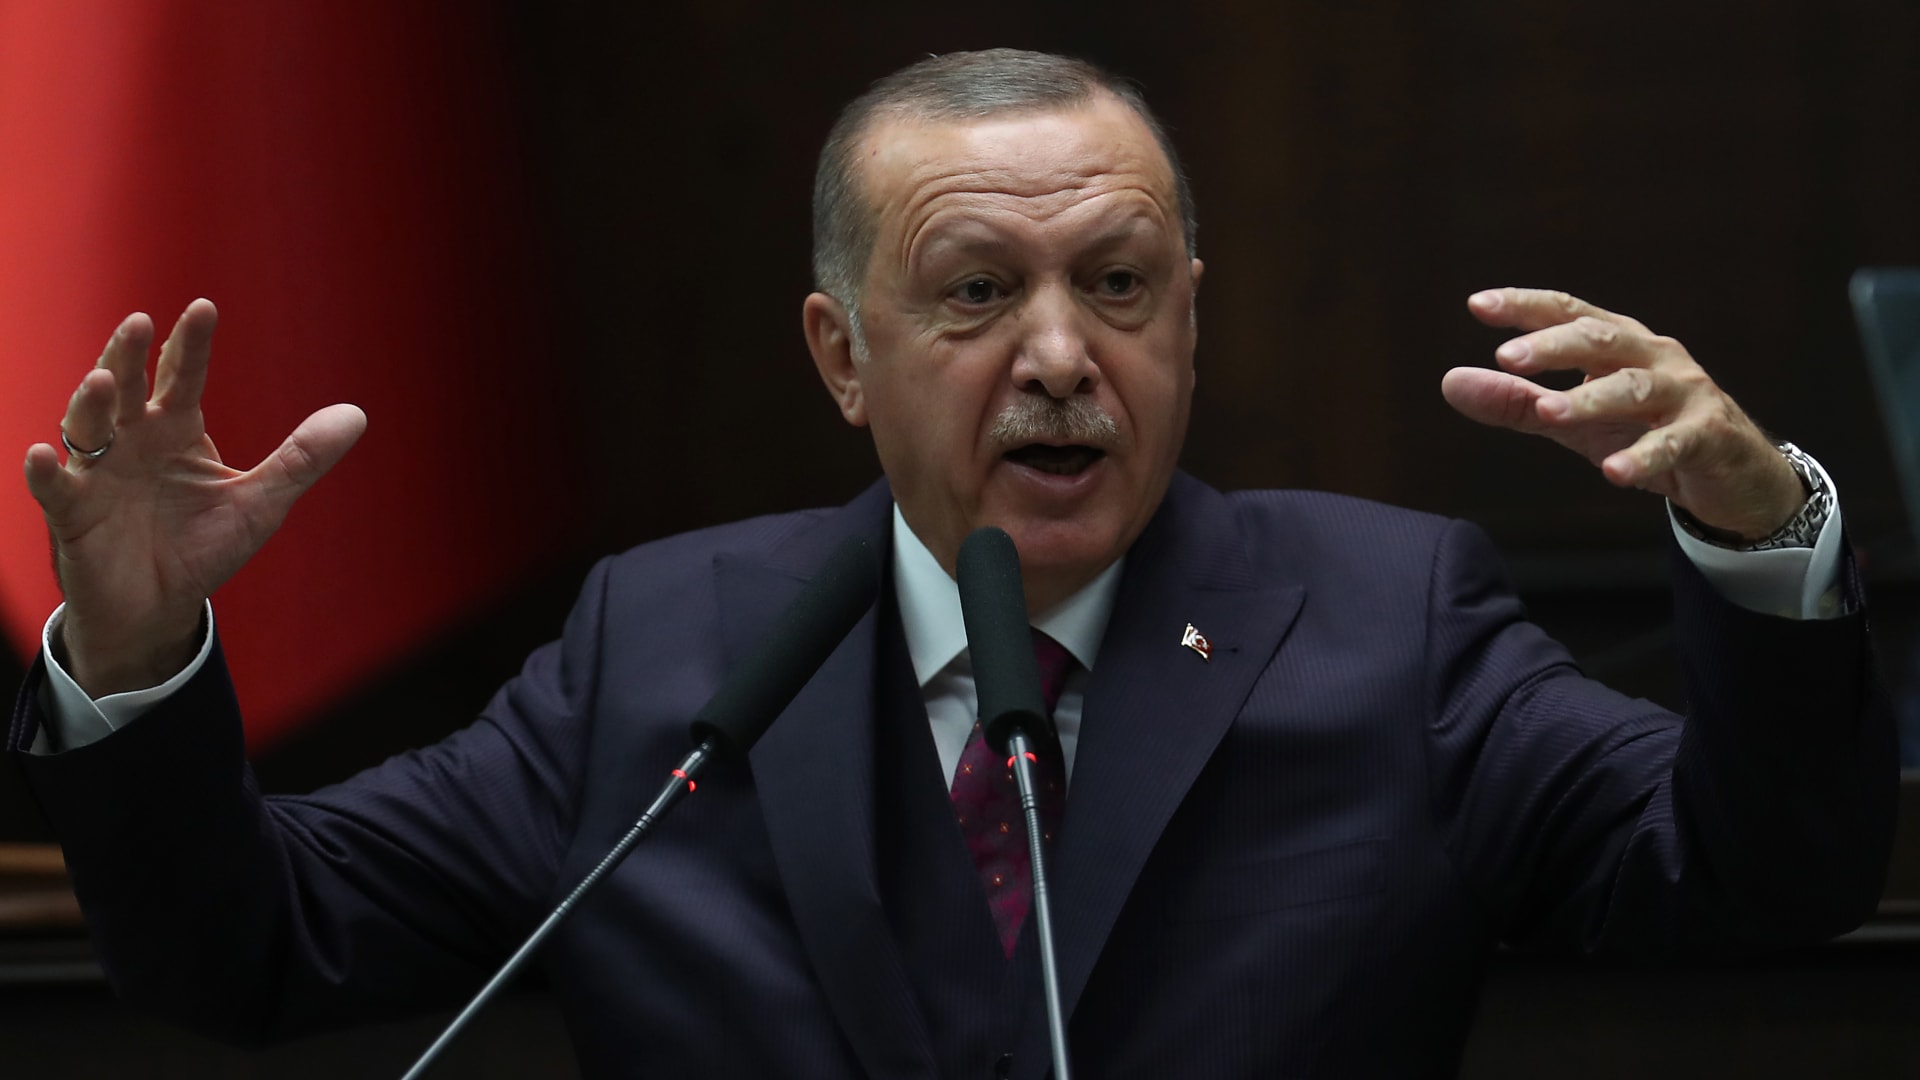 خوفاً من فيروس كورونا.. أردوغان يتجنب مصافحة أمين عام "الناتو"